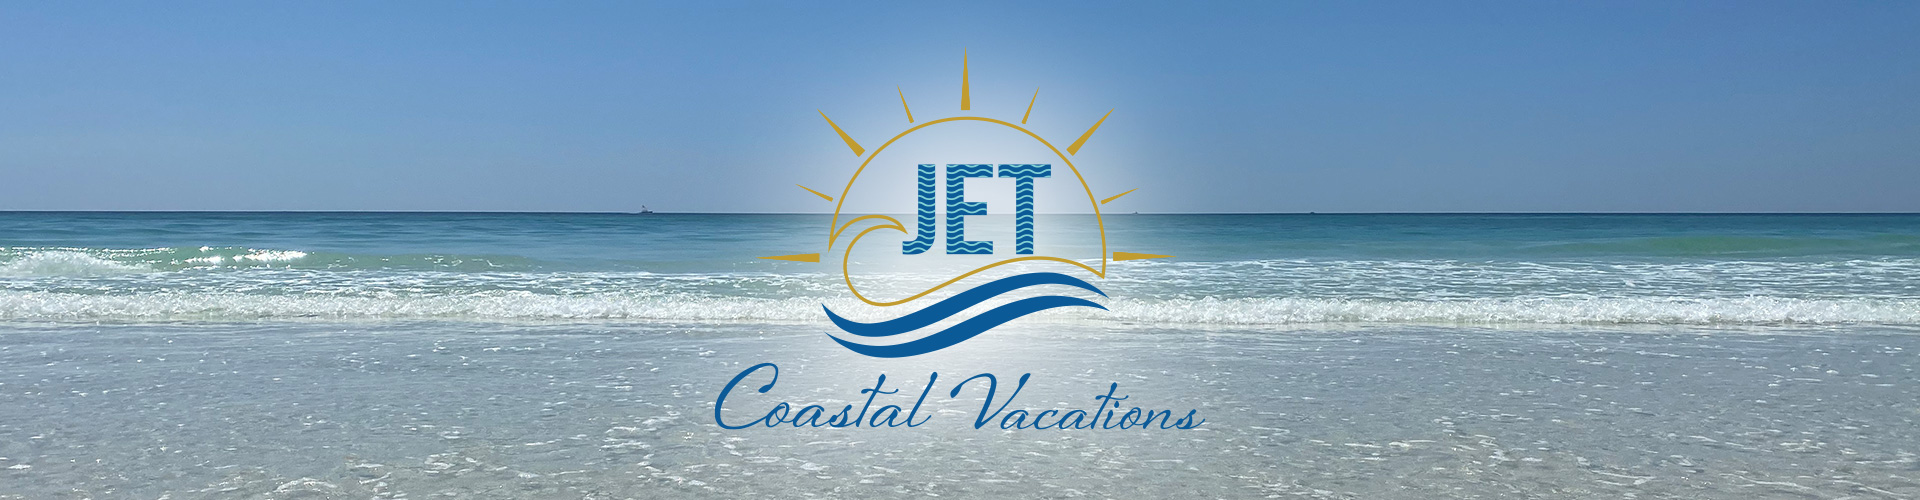 Jet Coastal Vacations - PCB Banner